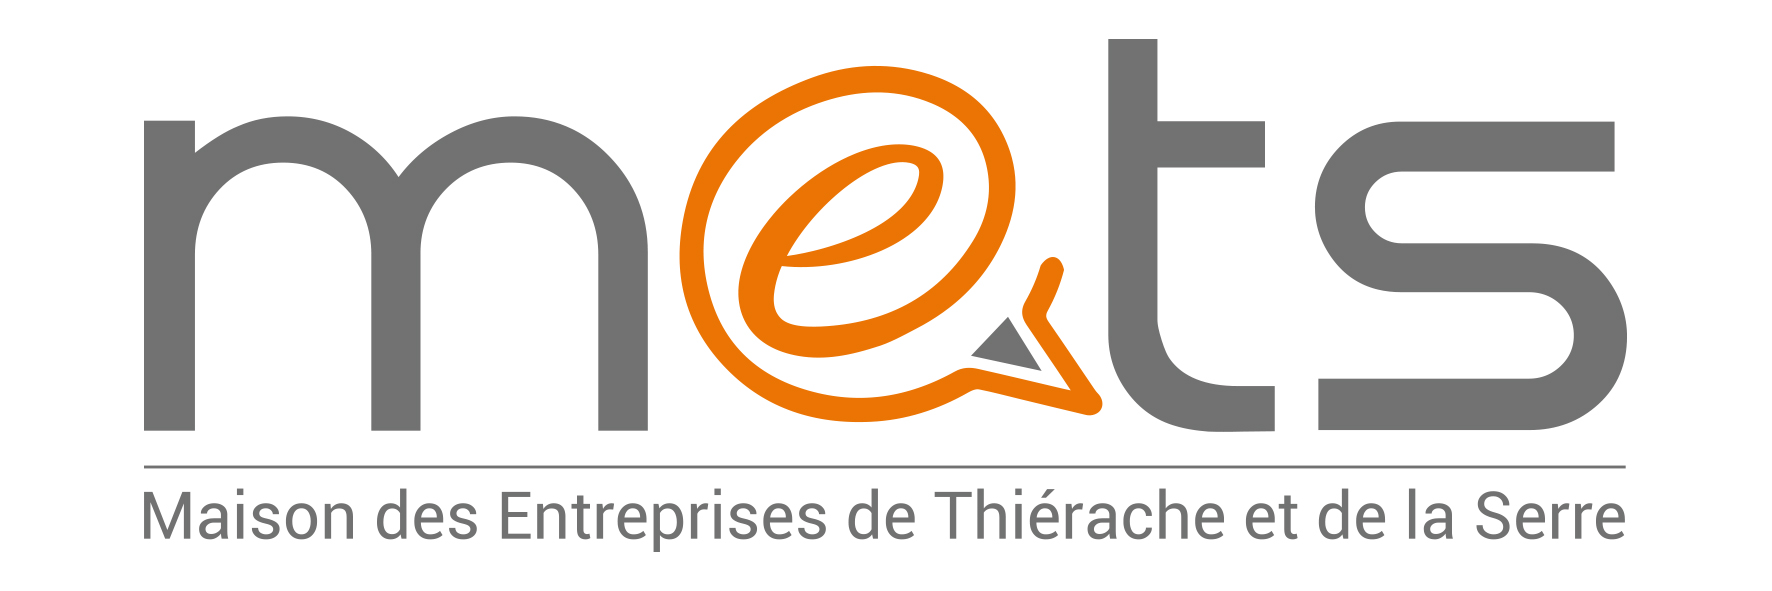 Logo adherent MAISON DES ENTREPRISES DE THIERACHE ET DE LA SERRE - METS